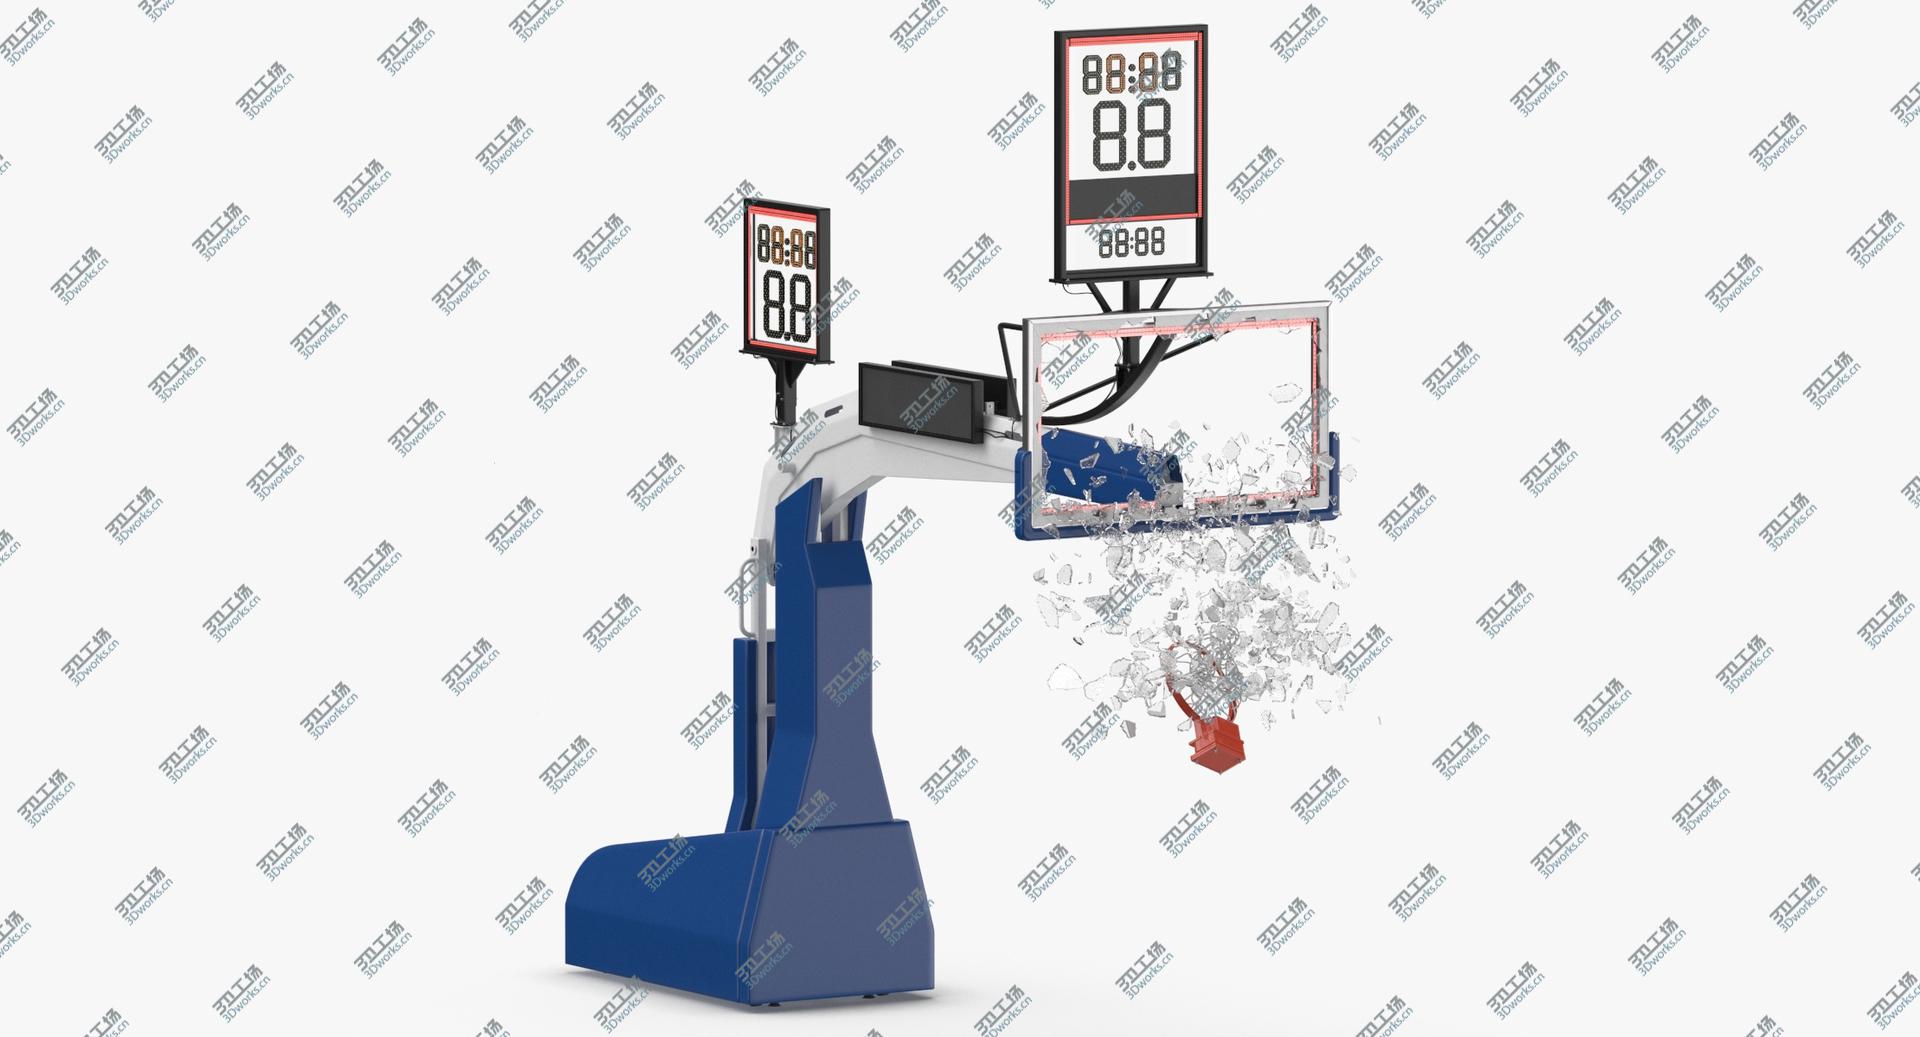 images/goods_img/202104092/3D Basketball Board Breaking  - Pose 03 model/1.jpg